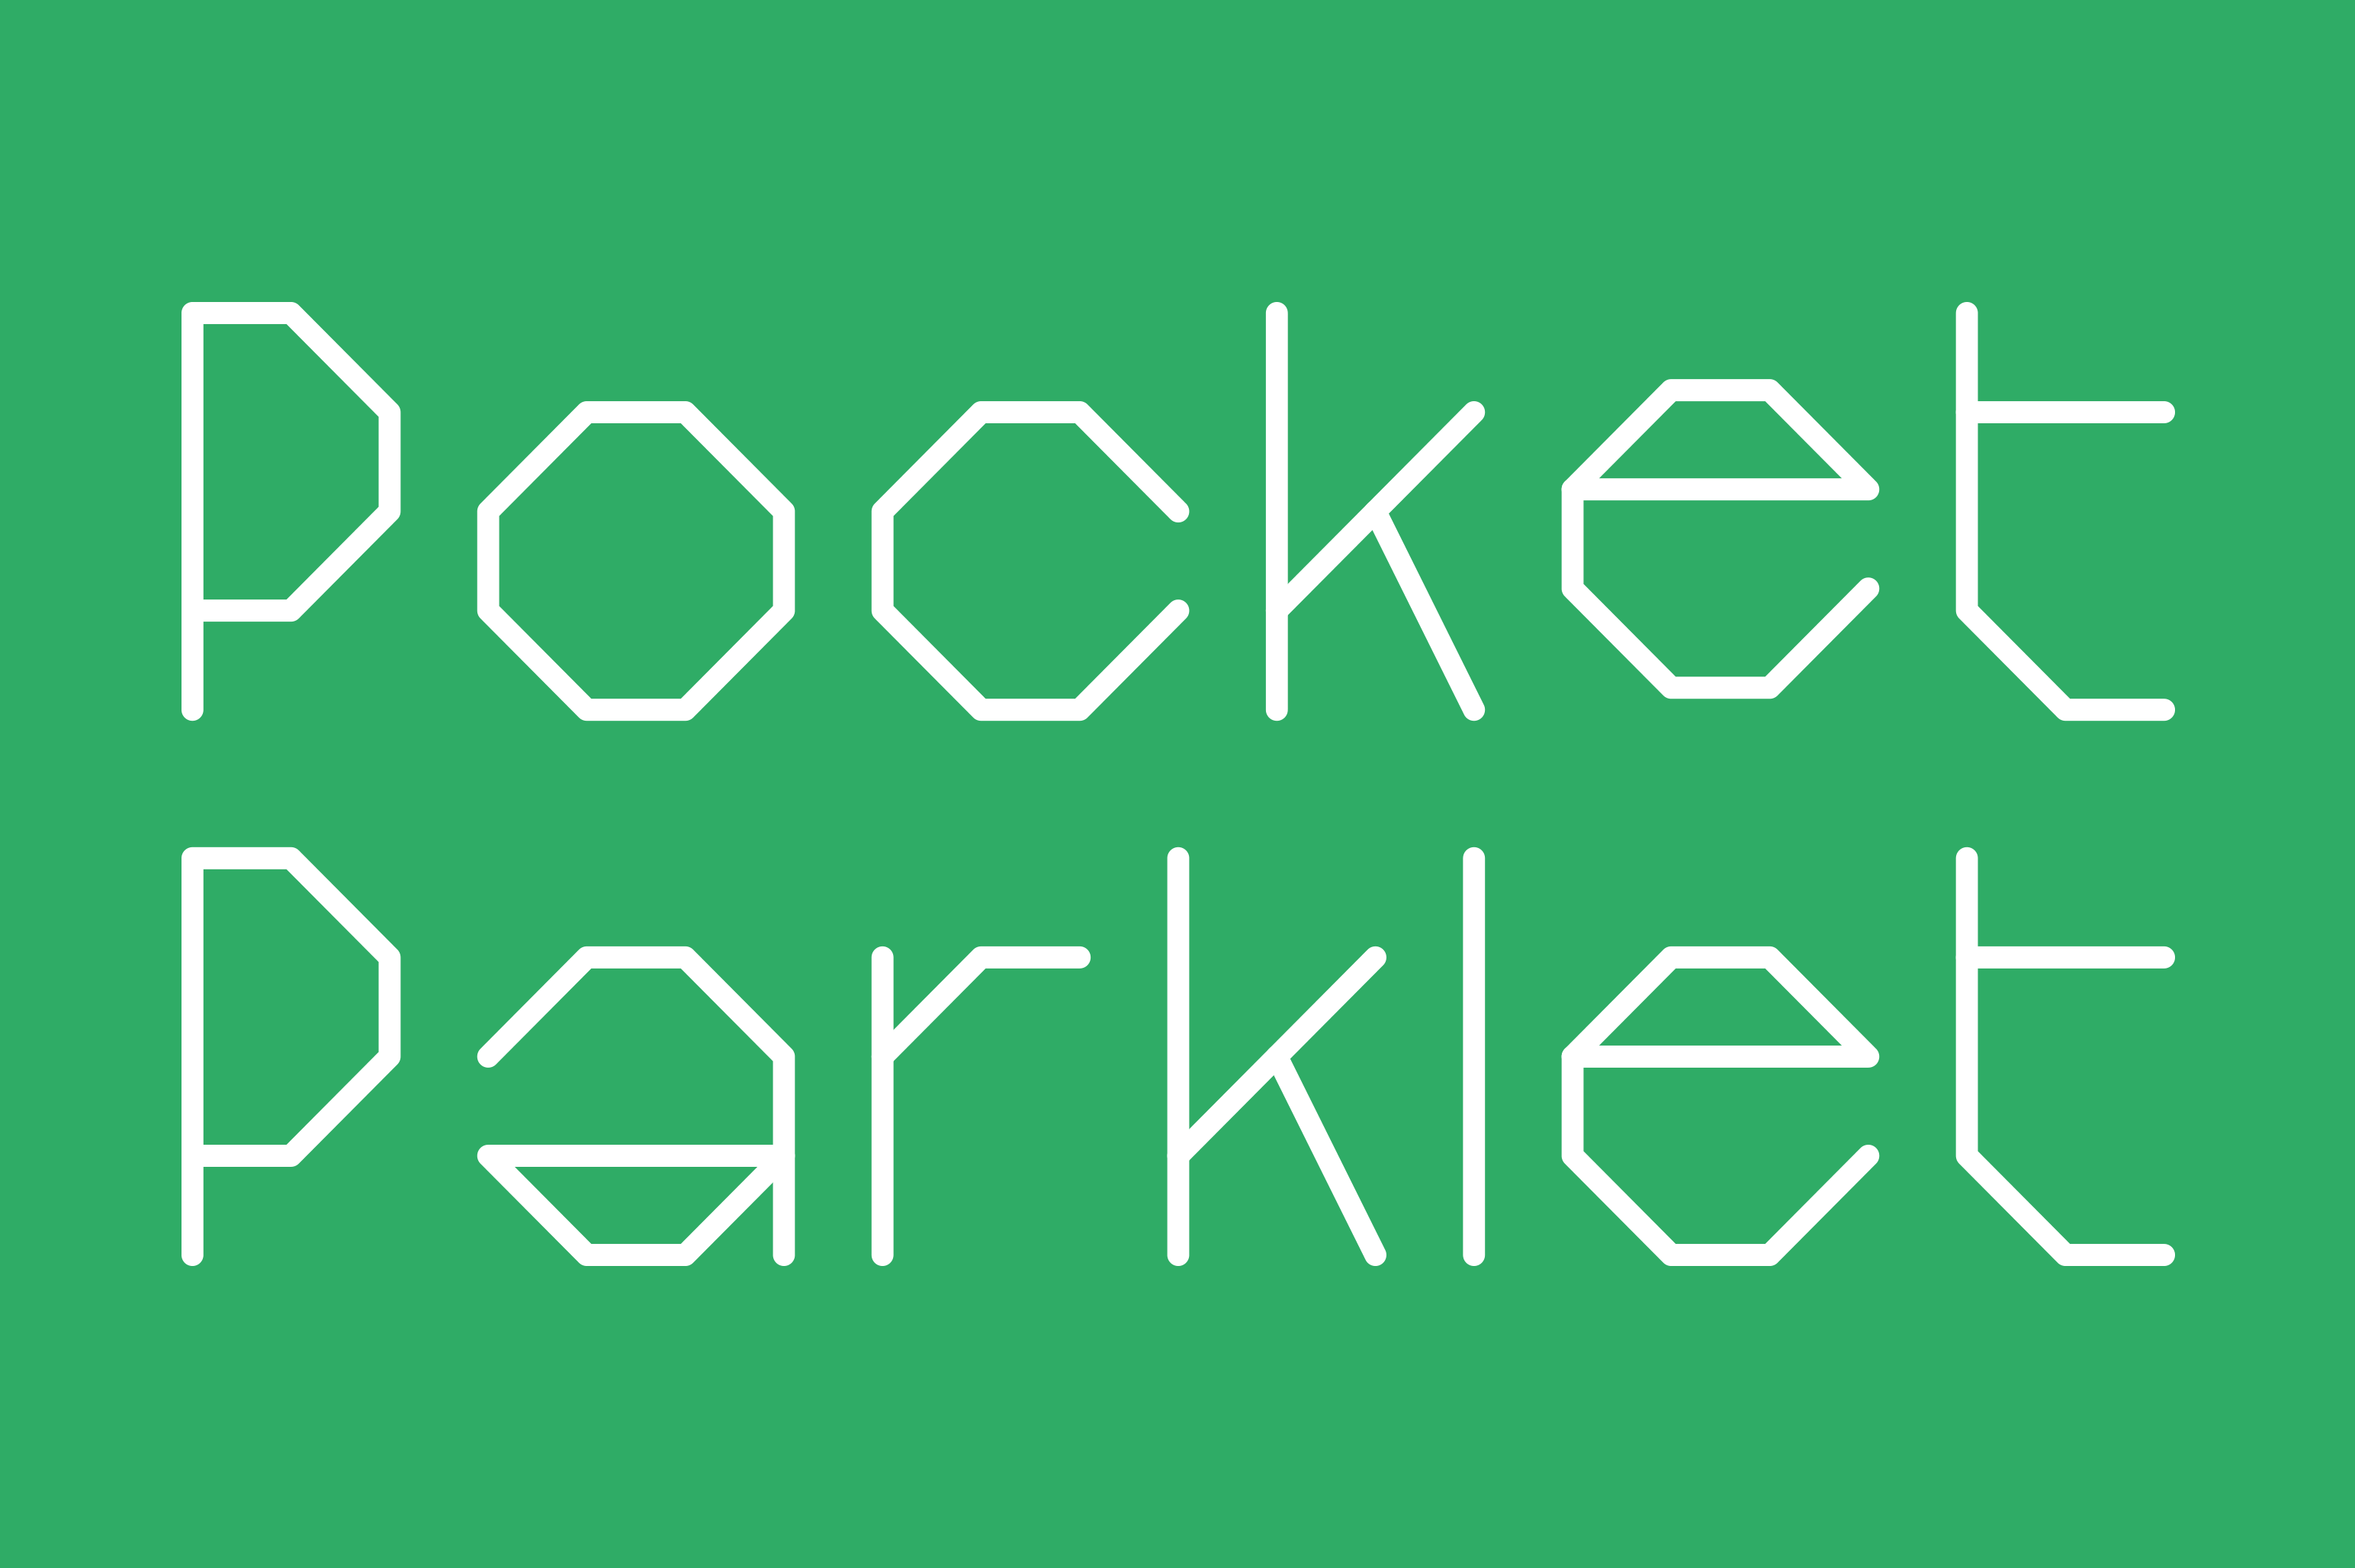 Pocket Parklet